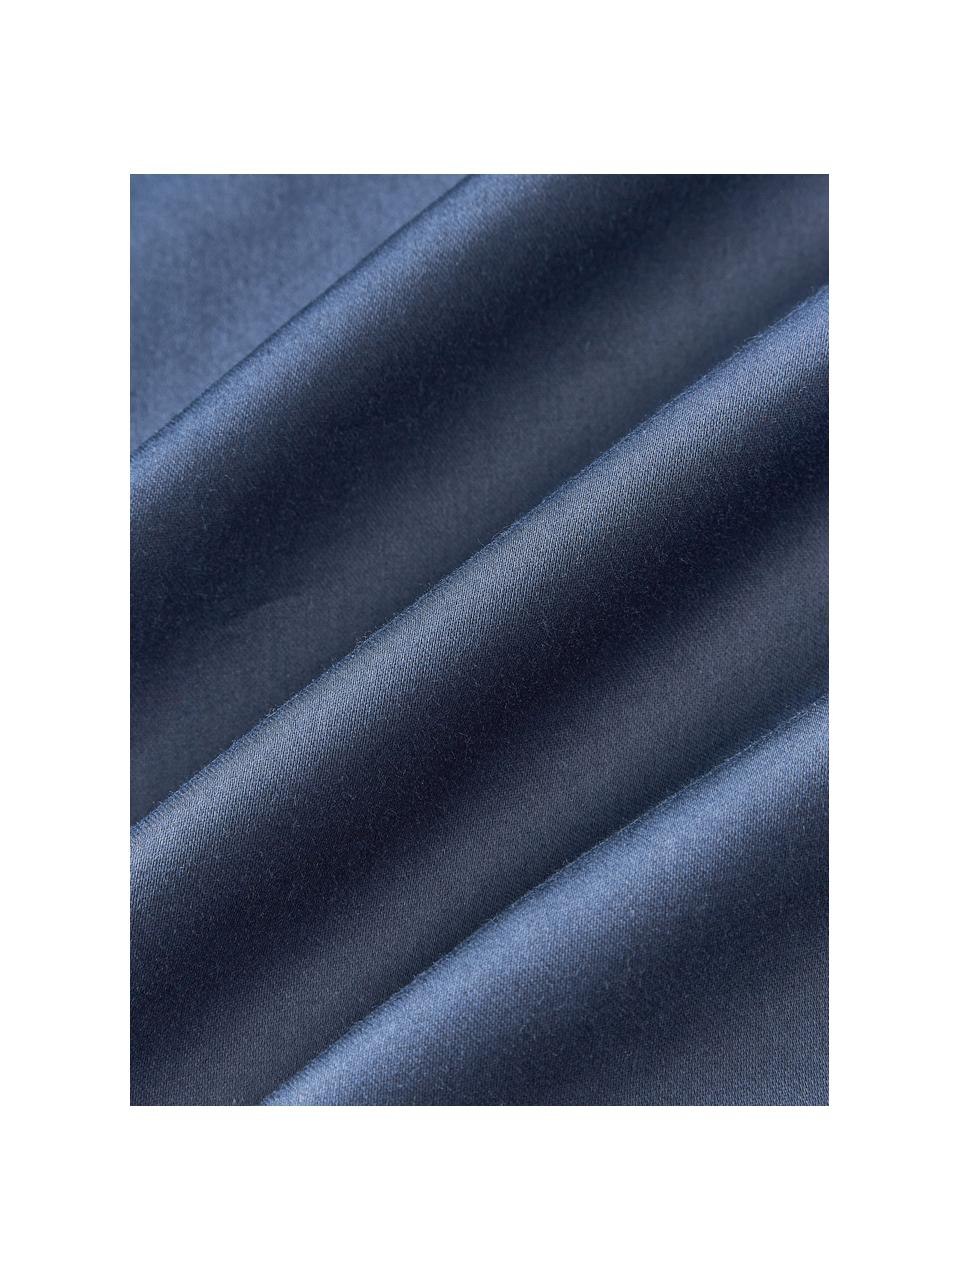 Poszwa na kołdrę z satyny bawełnianej Comfort, Ciemny niebieski, S 200 x D 200 cm